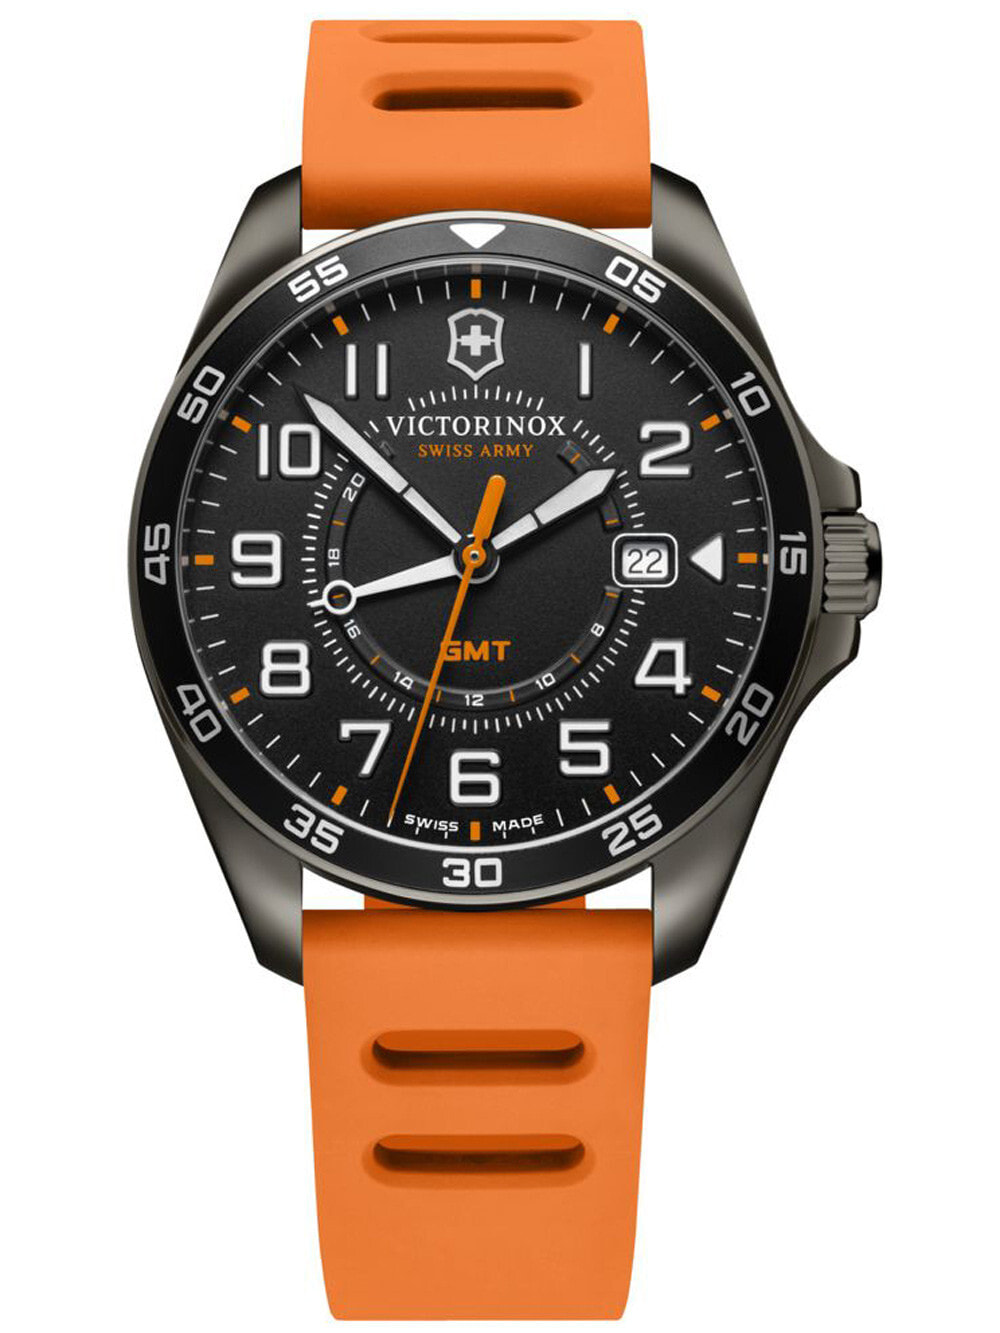 Мужские наручные часы с оранжевым силиконовым ремешком  Victorinox 241897 Field Force Sport mens 42mm 10ATM